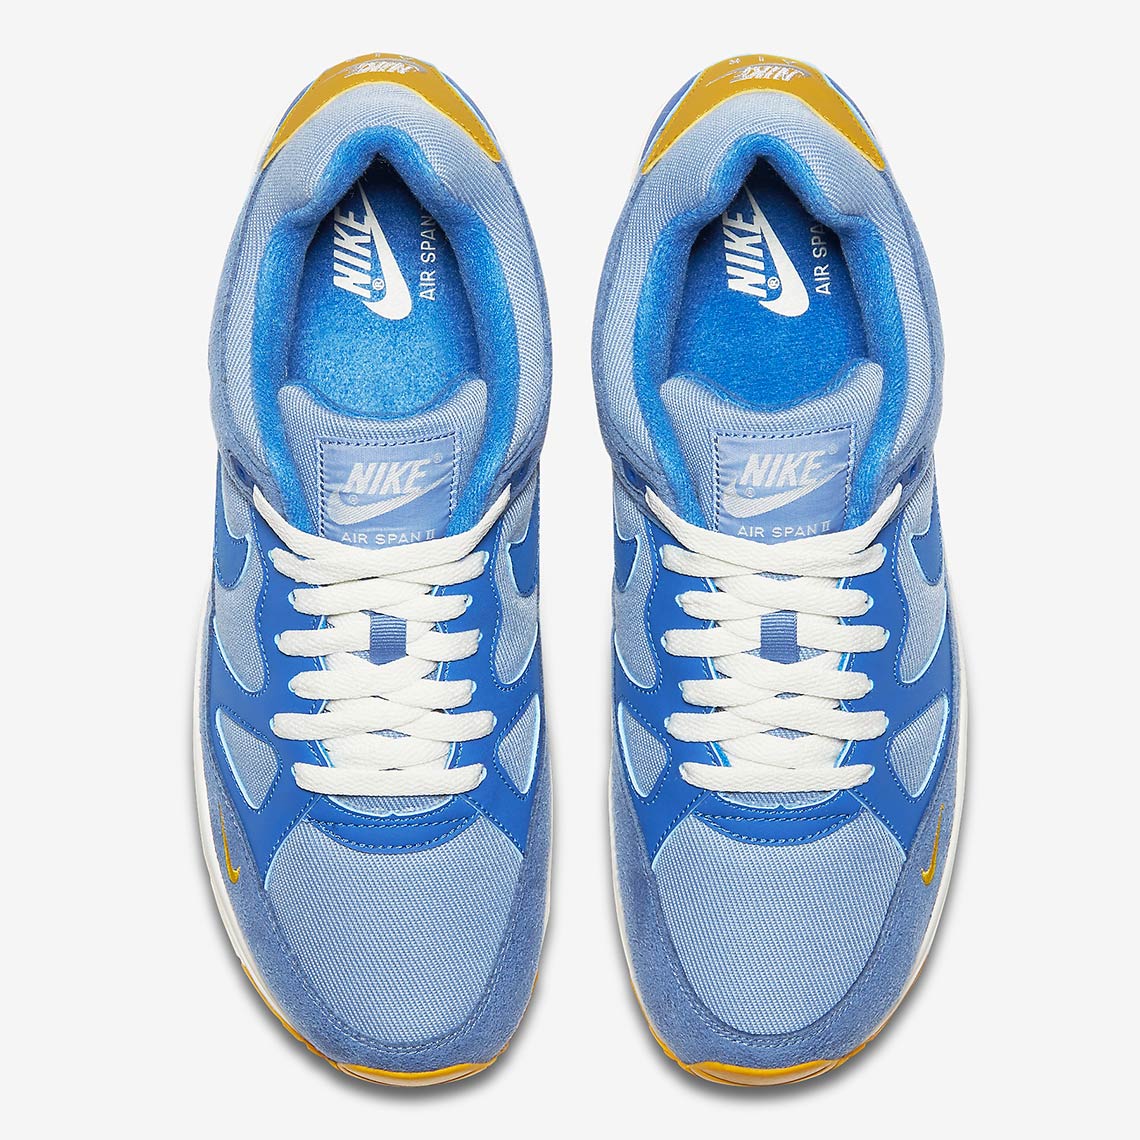 Nike Air Span 2 Blue Yellow Aq3120 400 4